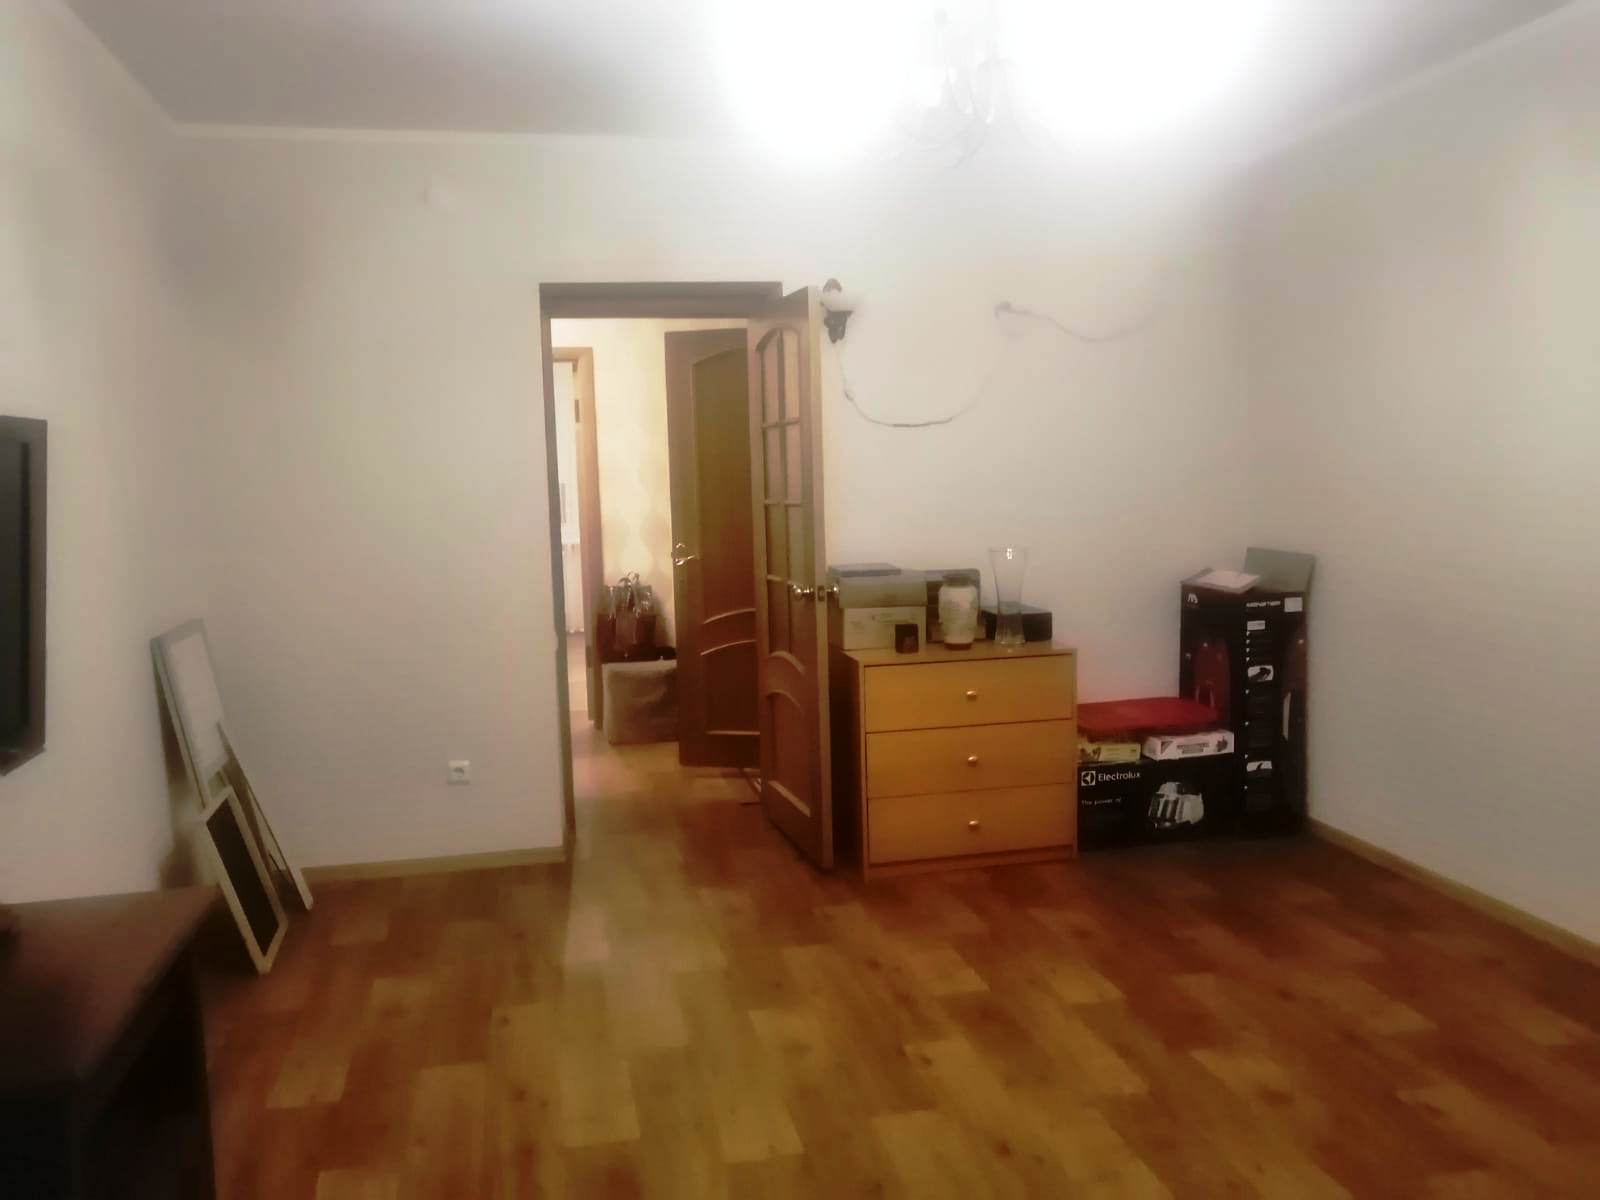 Продается отличная 3-х комнатная квартира улучшенной планировки на среднем этаже кирпичного дома в г. Зеленодольск.... - 1